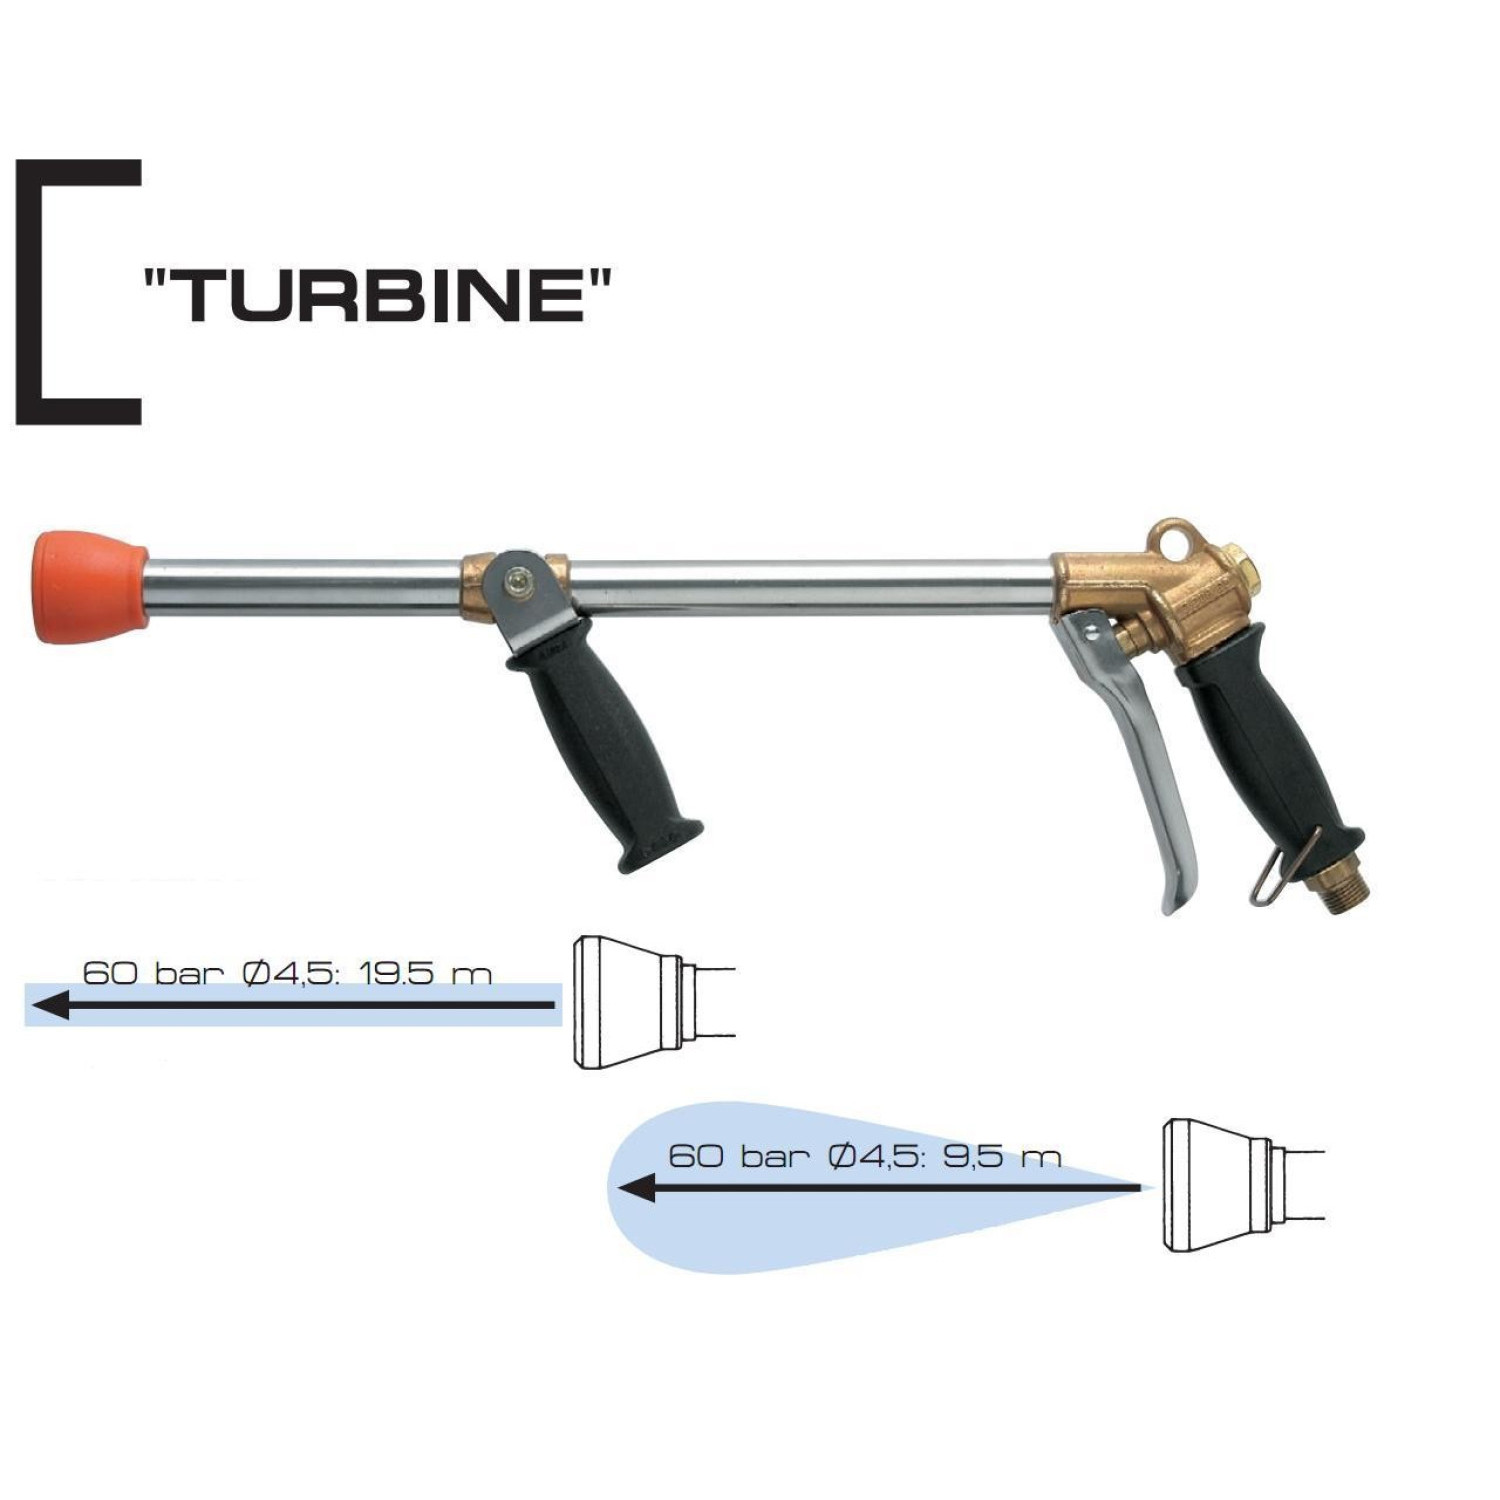 ПИСТОЛЕТ ЗА ПРЪСКАНЕ "TURBINE" - Ø2.3 mm, 600 mm, 60 bar/max - Braglia